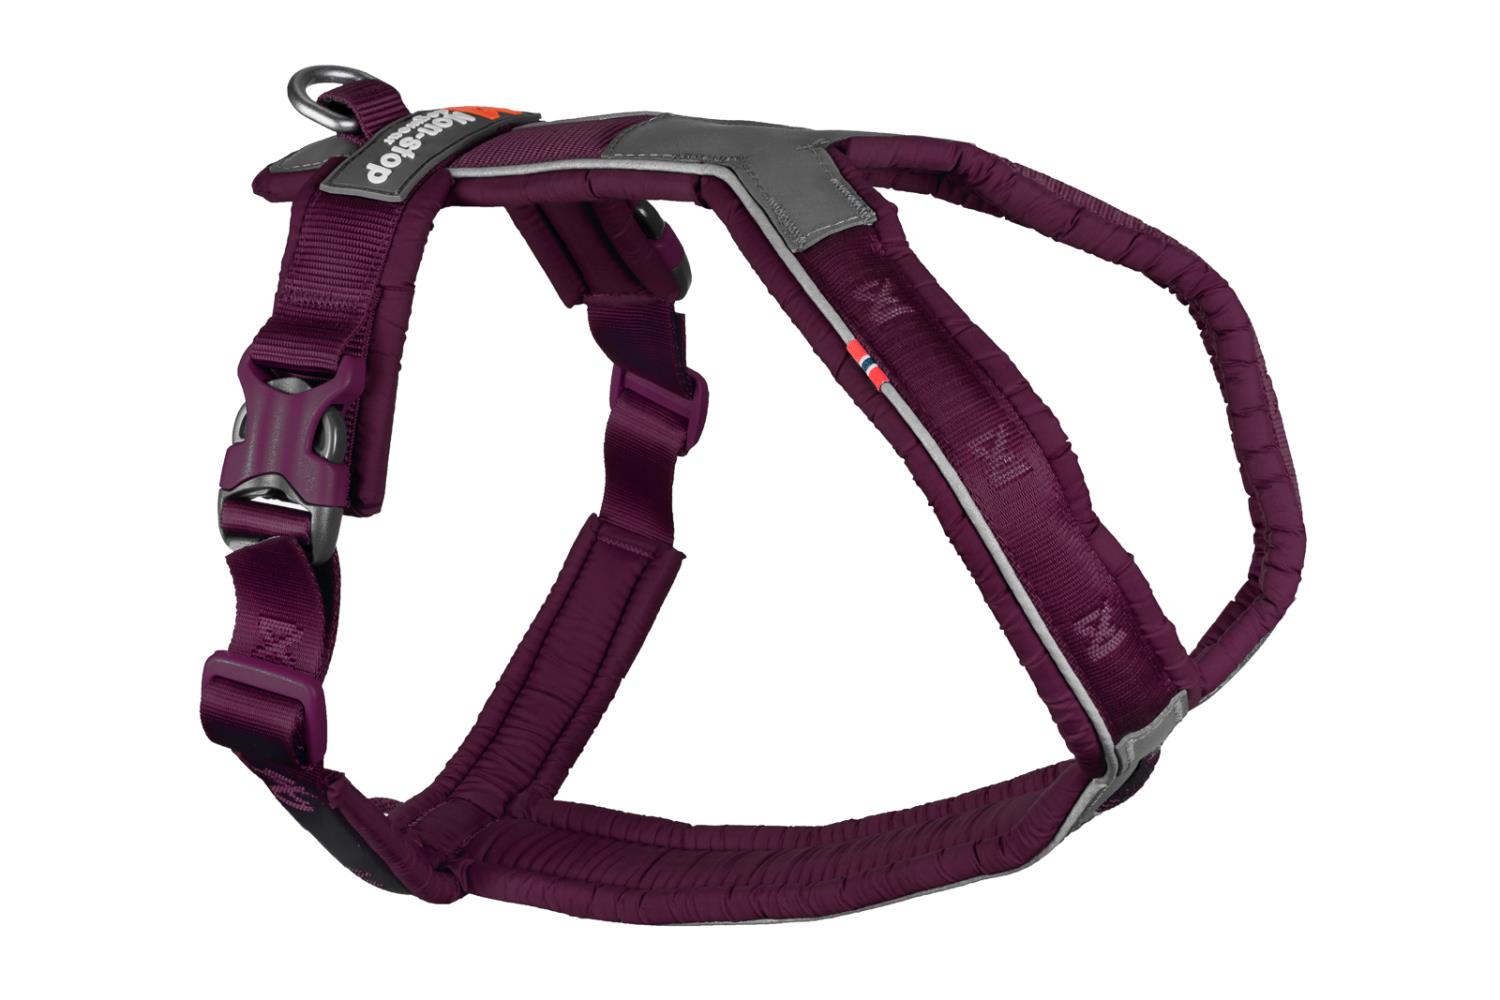 Non-stop Line harness 5.0, purple, 7